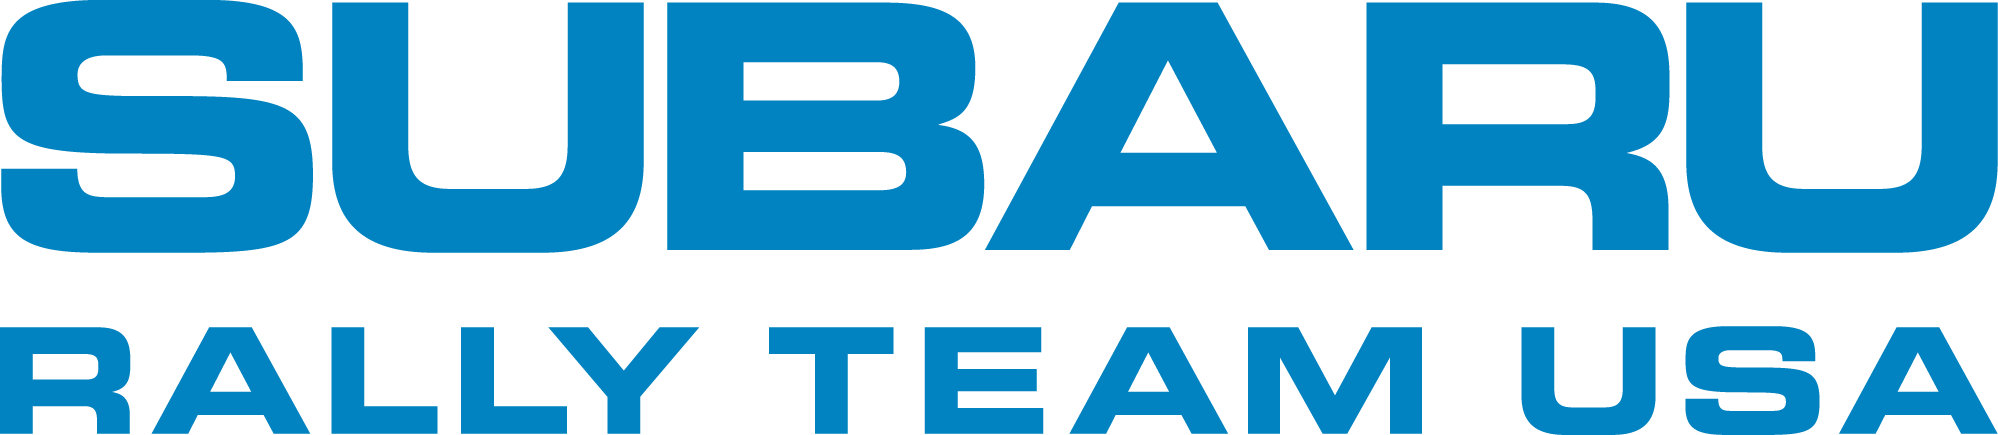 Subaru Rally Logo - Subaru Rally Team - Meet & Greet May 30 2018 | Blaise Alexander Subaru